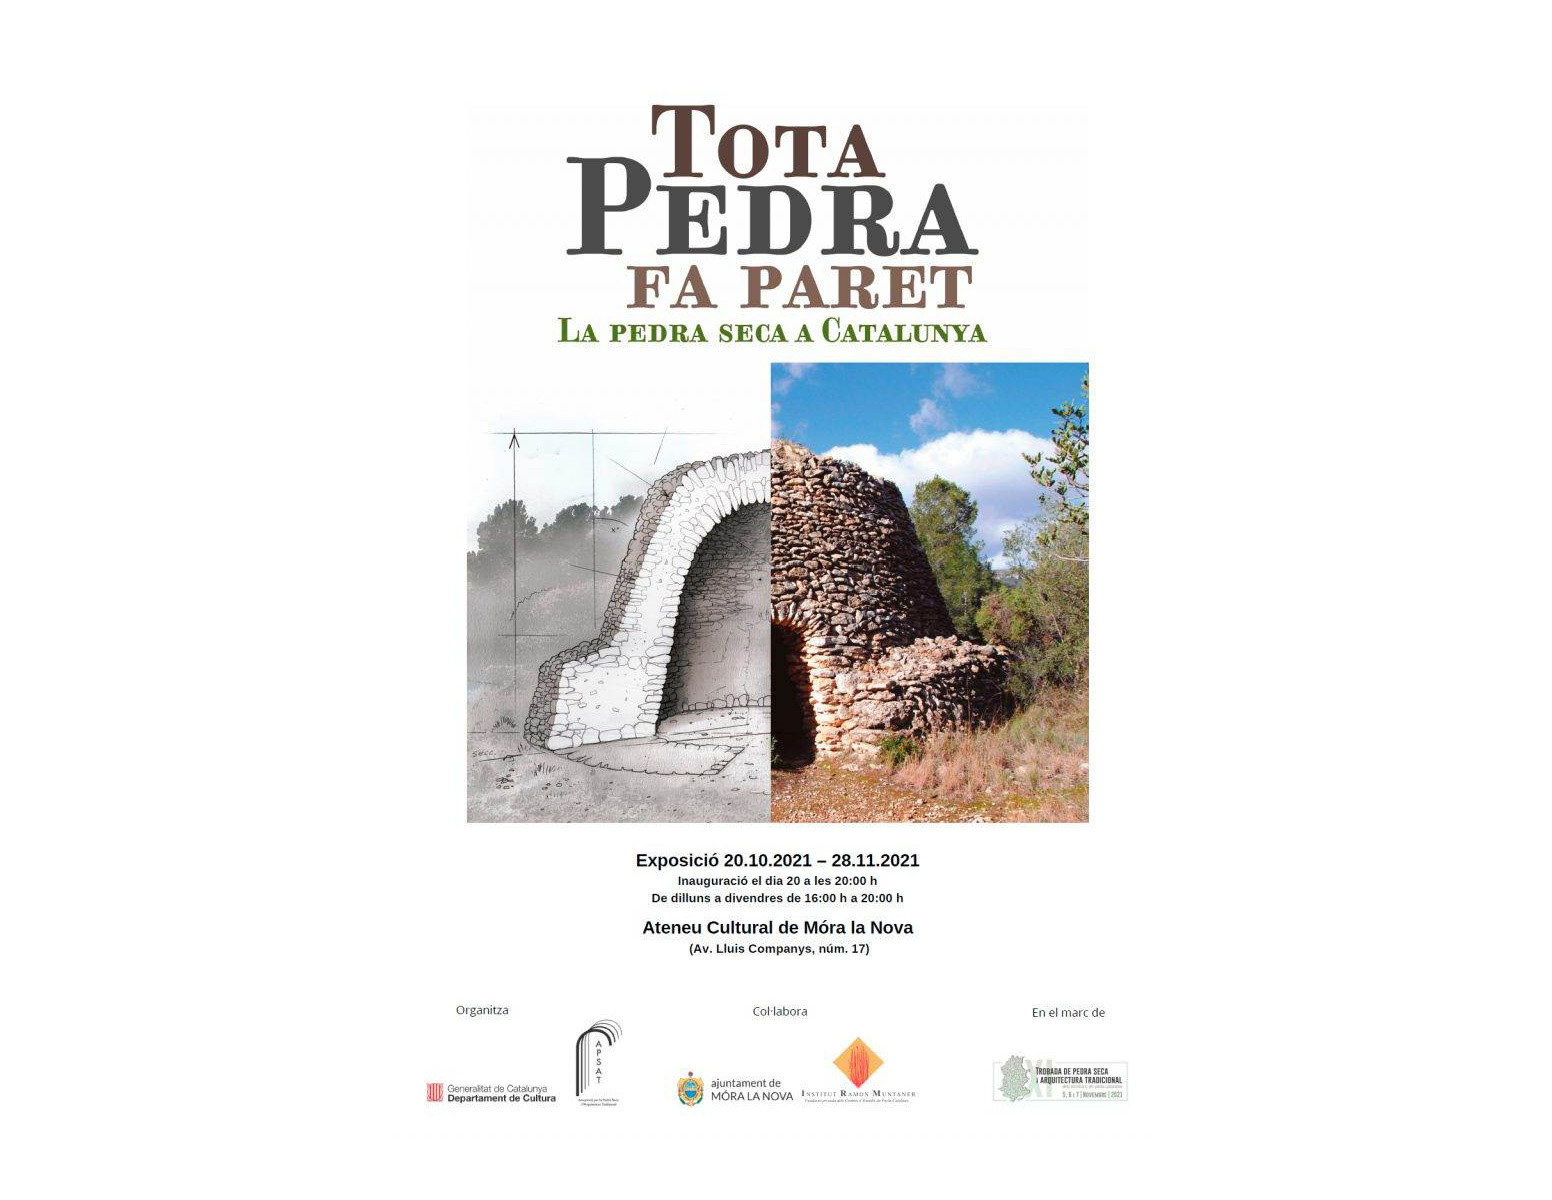 L'exposició "Tota pedra fa paret. La pedra seca a Catalunya" arriba a Móra la Nova